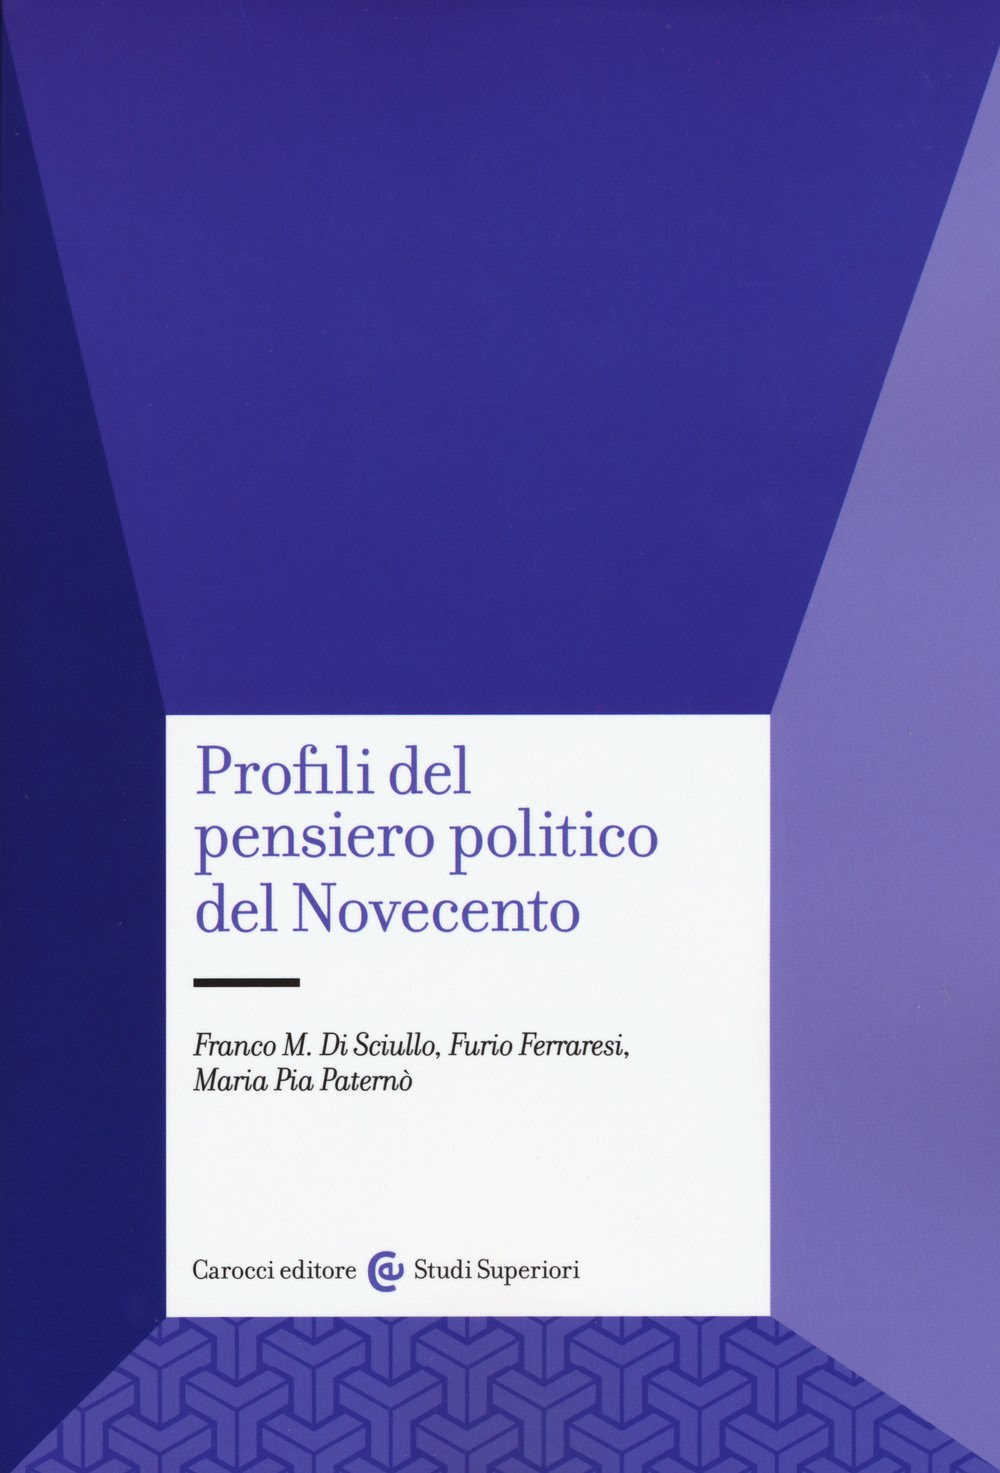 Profili del pensiero politico del Novecento in Kindle/PDF/EPUB